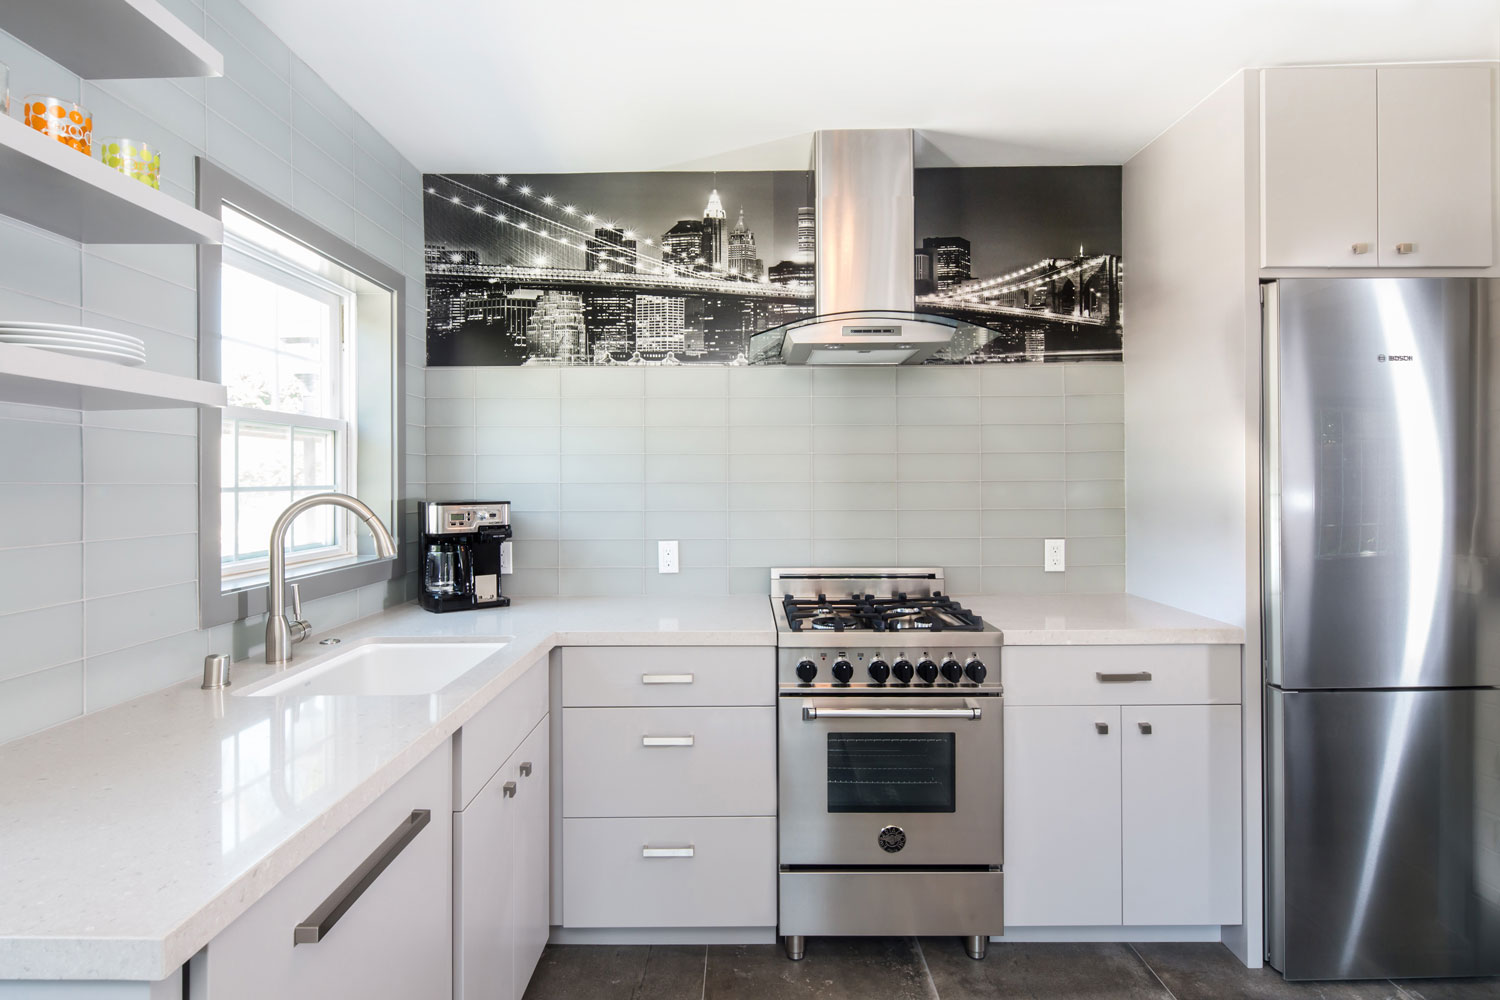 5-Waterford-modern-kitchen-white.jpg